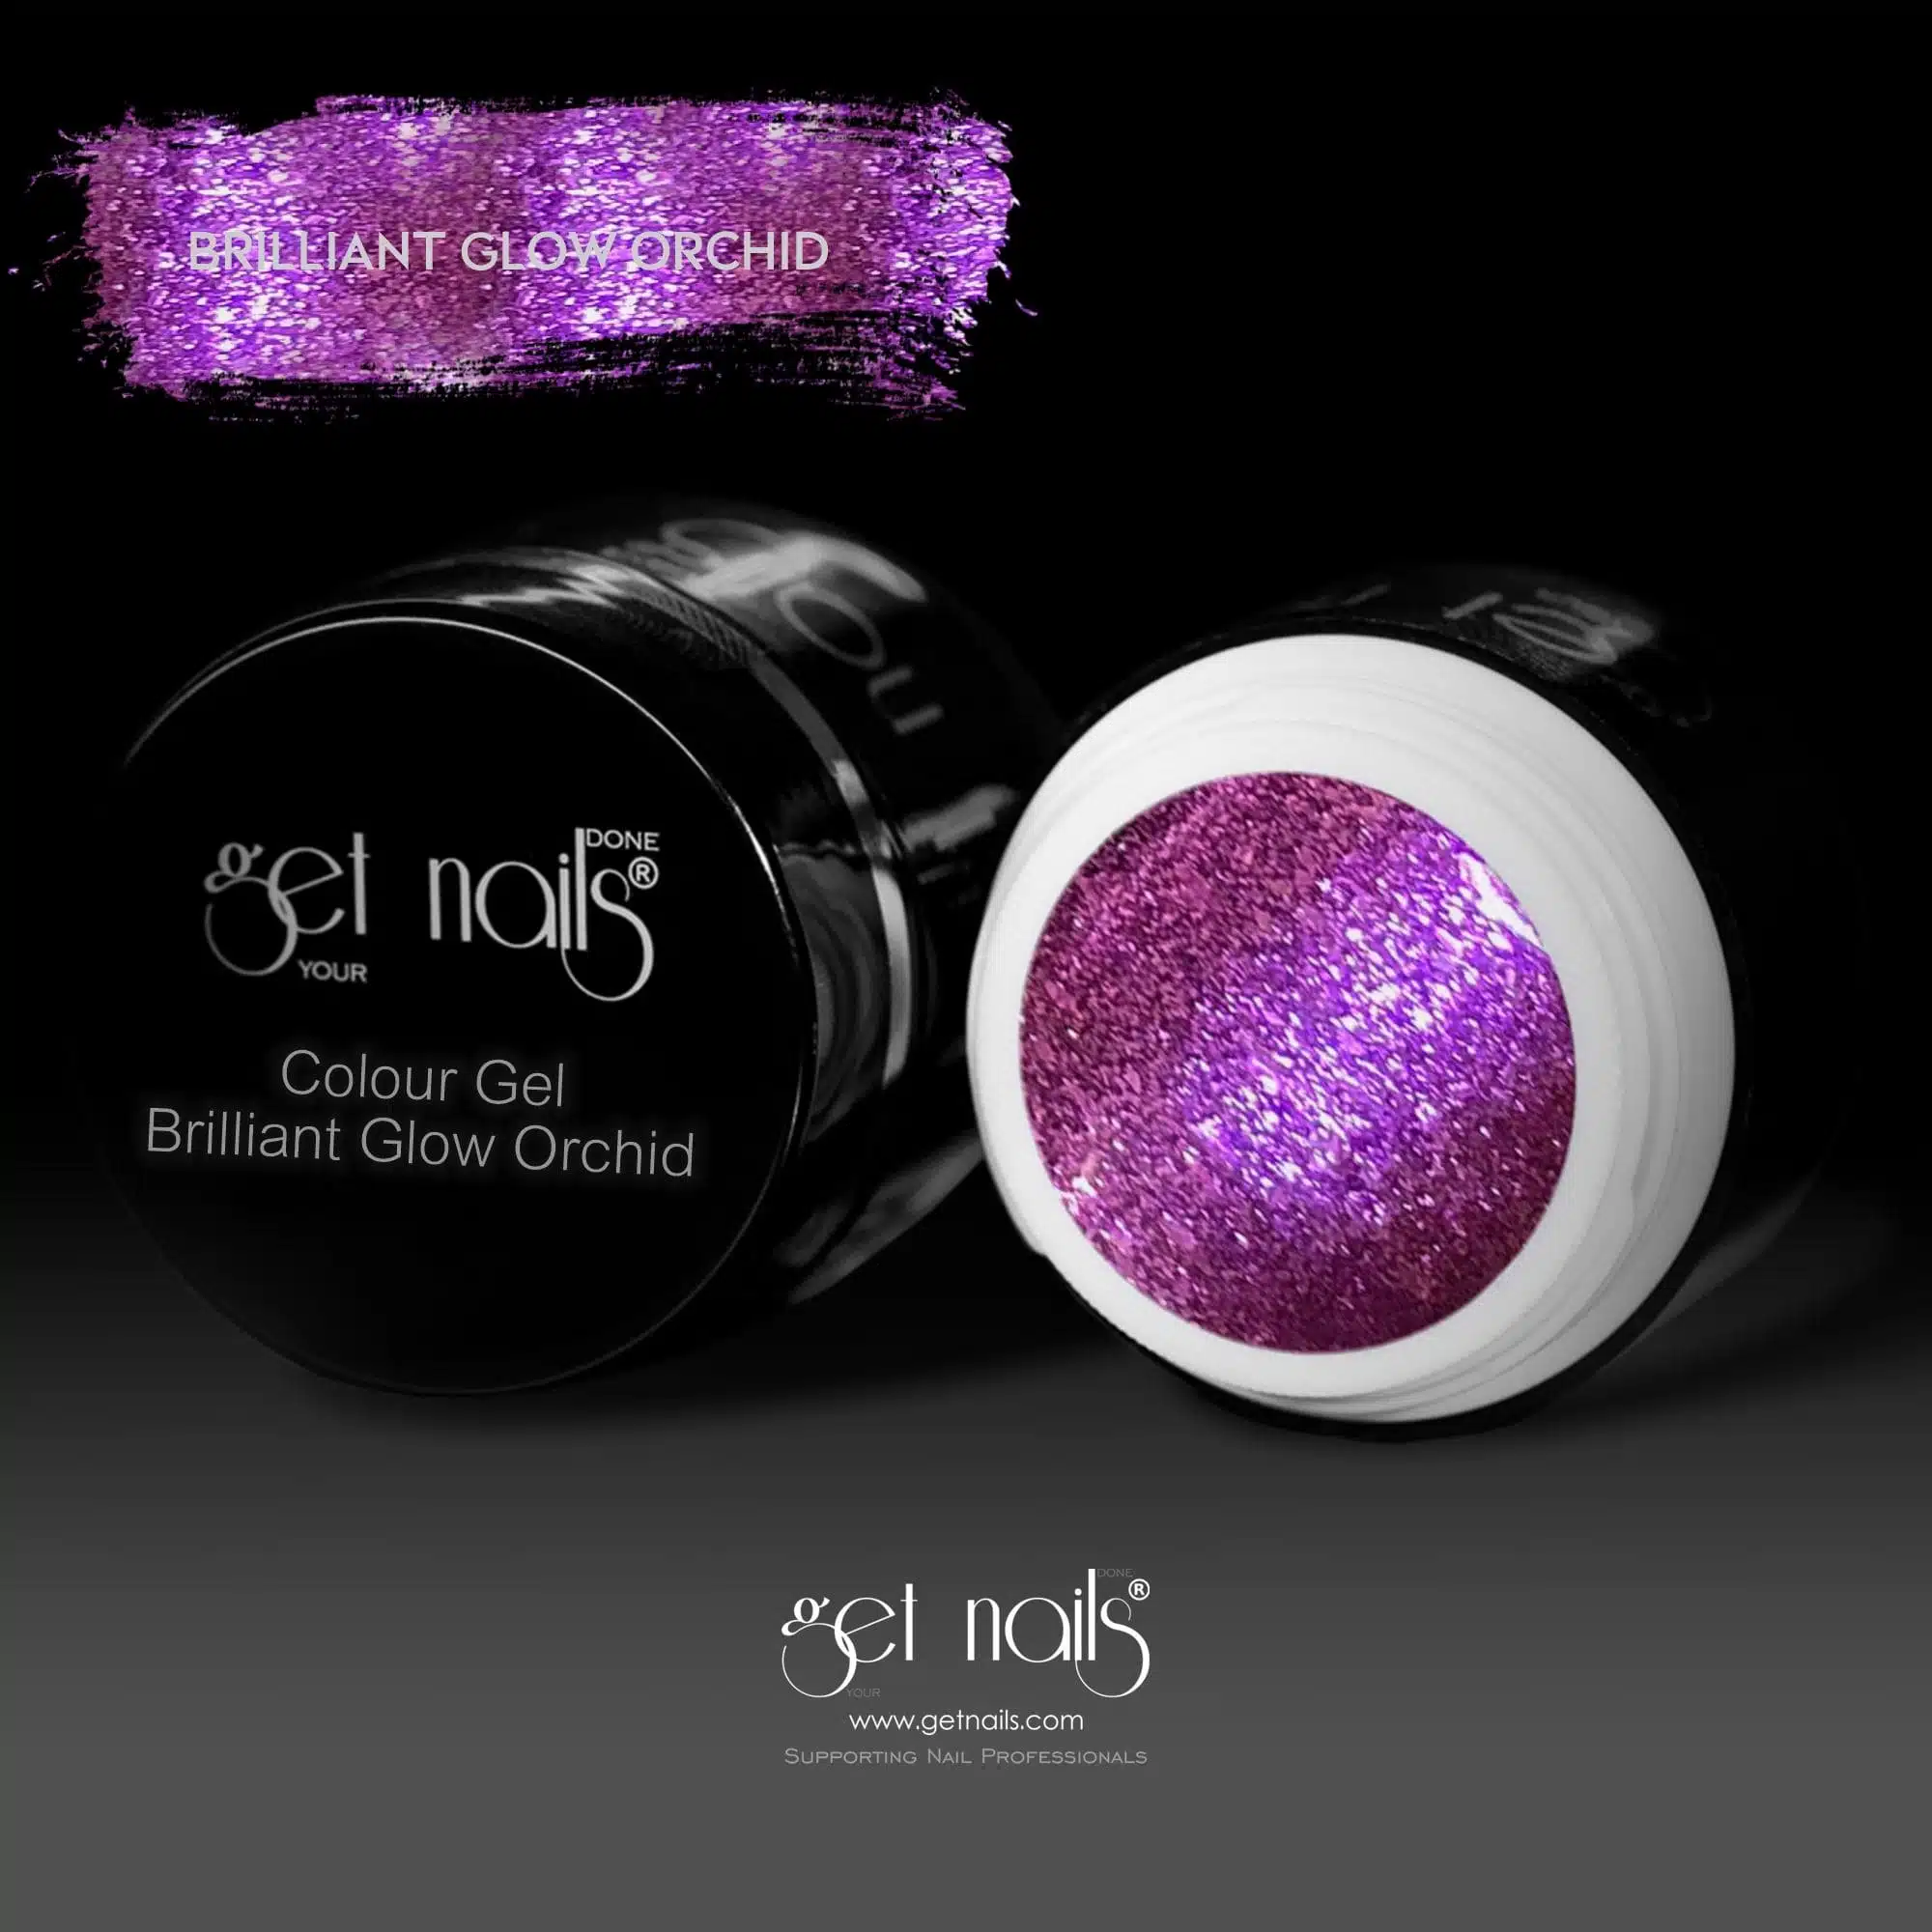 Get Nails Austria - Színes gél Brilliant Glow Orchid 5g